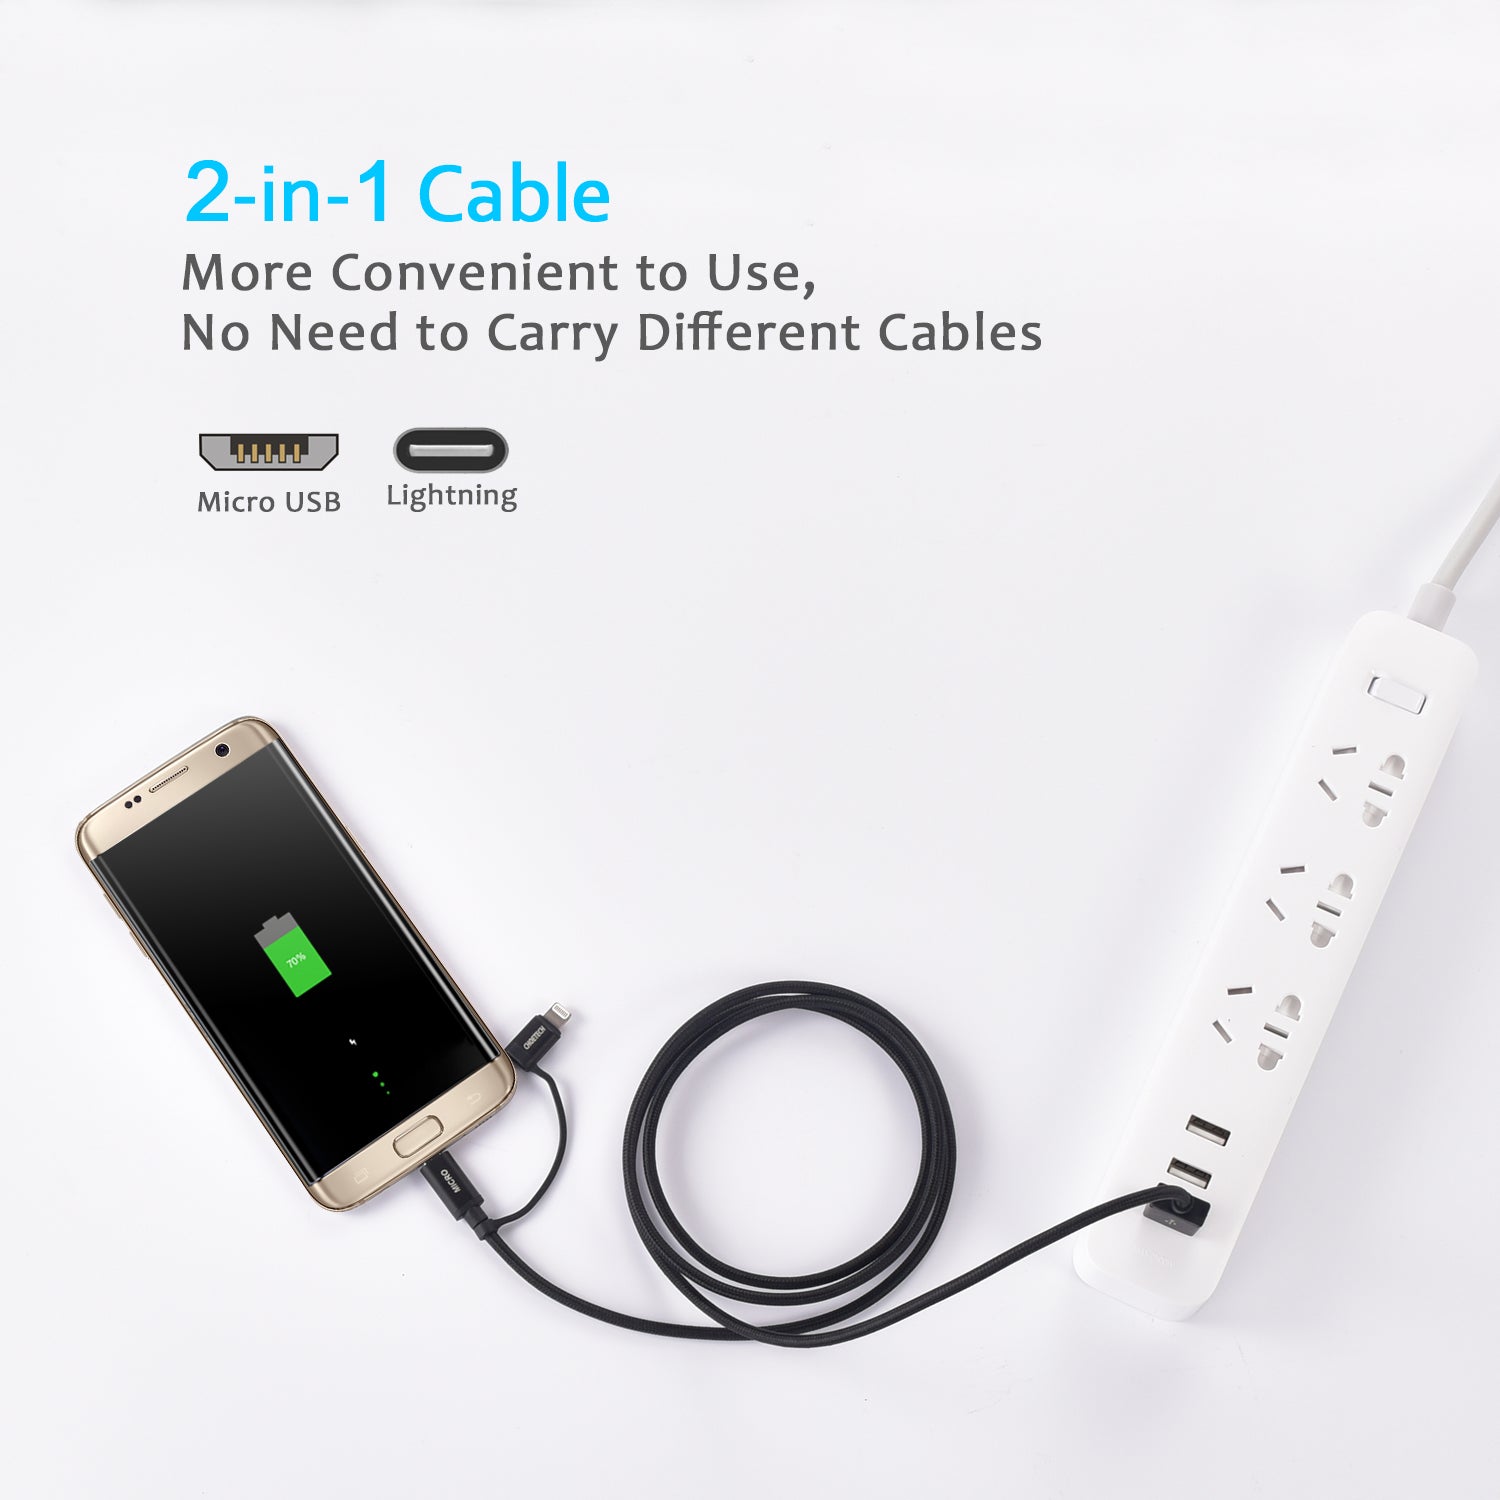 IP0028 [Apple MFi-zertifiziert] CHOETECH 2-in-1-Lightning- und Micro-USB-Kabel (1,2 m), mit Nylon geflochtenes Lade- und Synchronisierungskabel für iPhone 7/7 Plus/6s/6s Plus/6/6 Plus, iPad, iPod, Galaxy S7 Edge und mehr